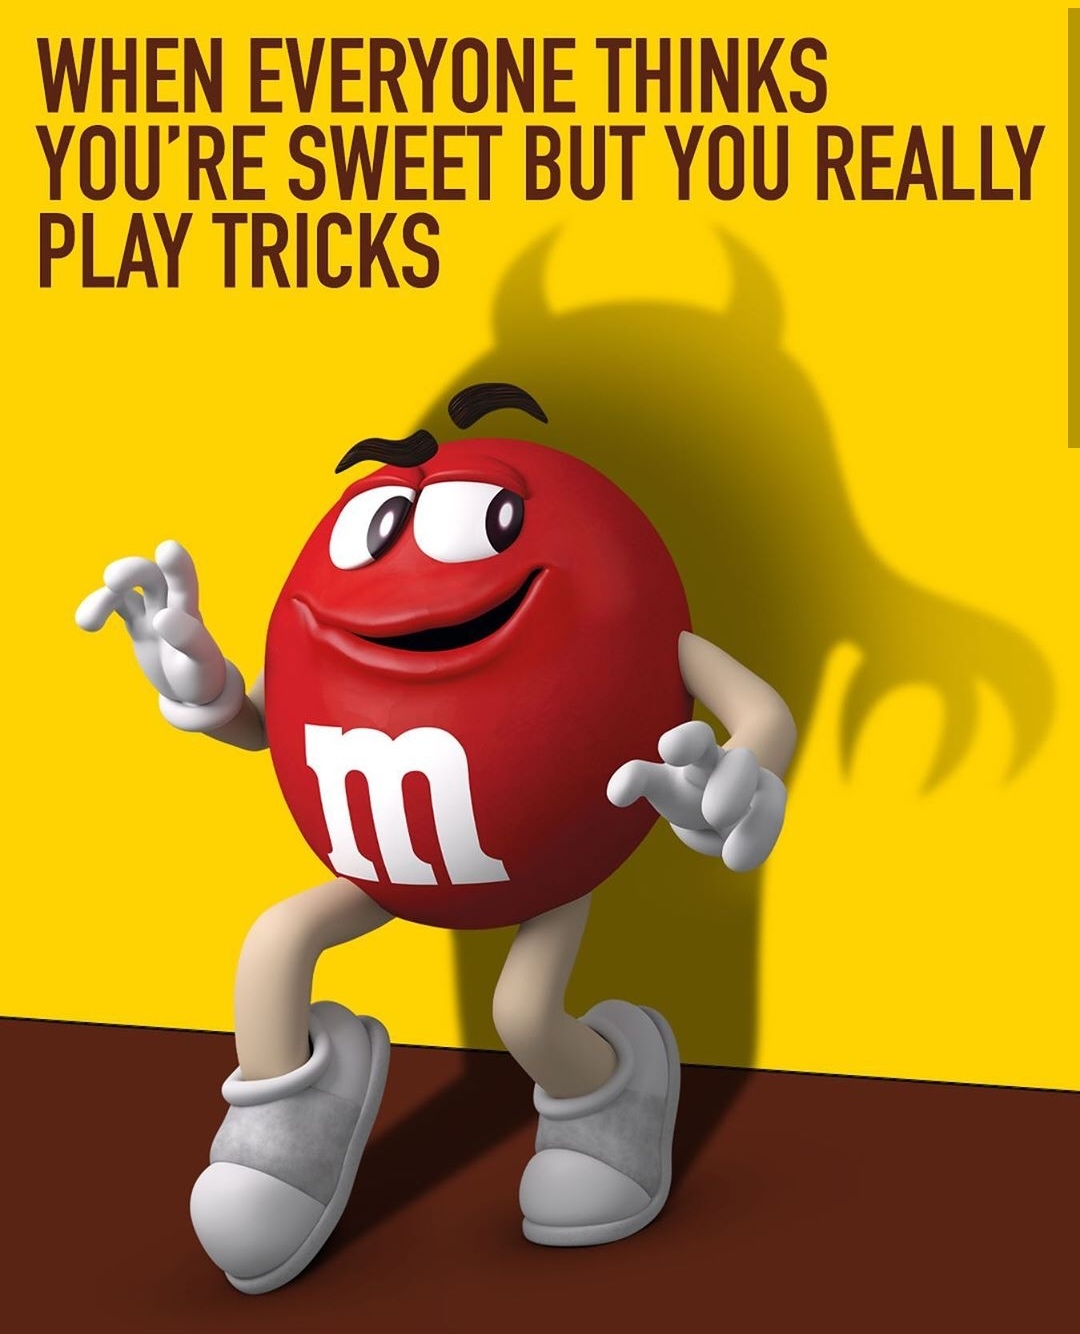 mm巧克力豆广告分析图片